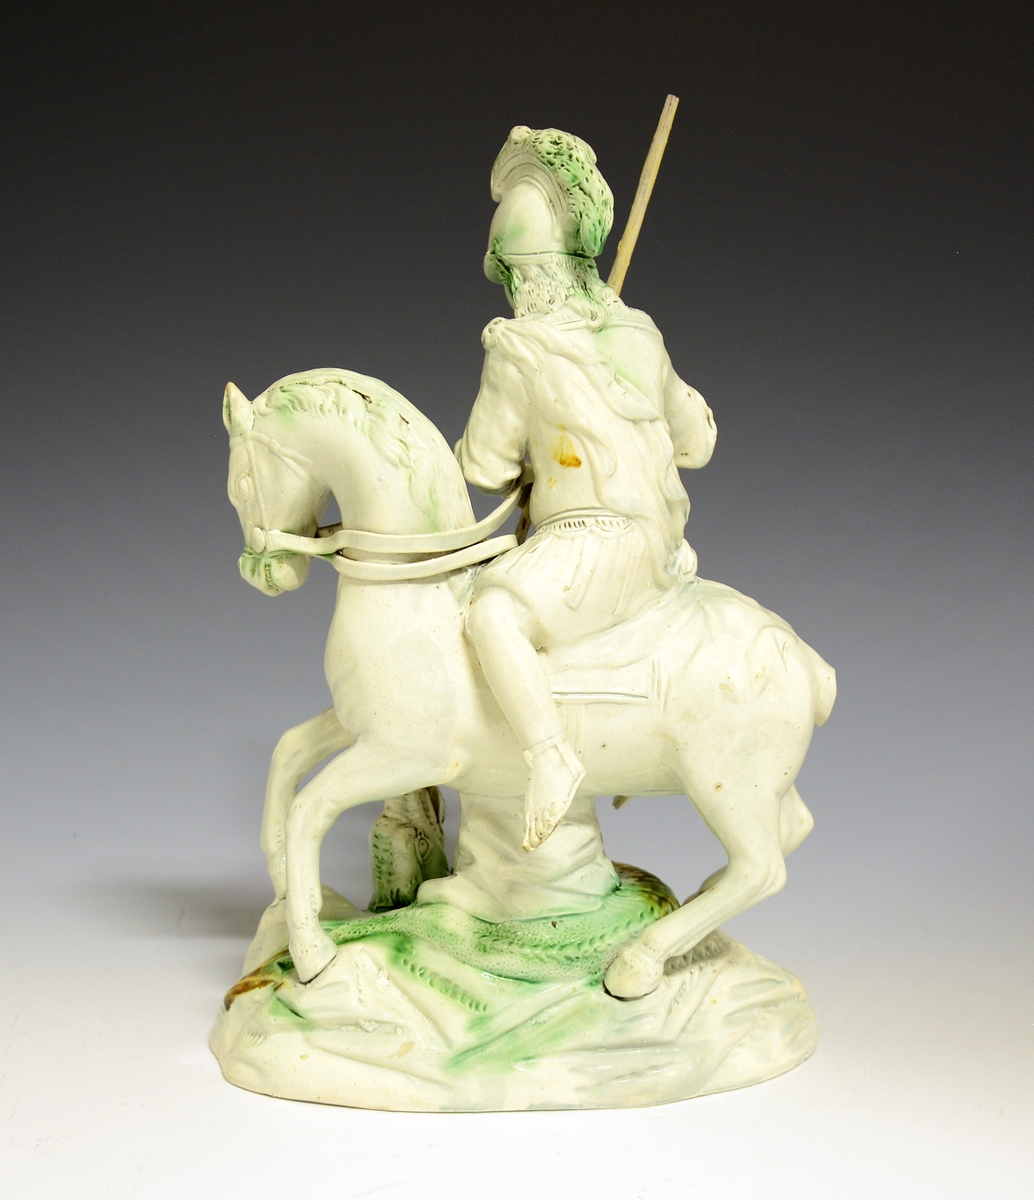 St. Georg til hest dreper dragen. Hvitglasert fajanse med håndmalte detaljer i grønt og gult.